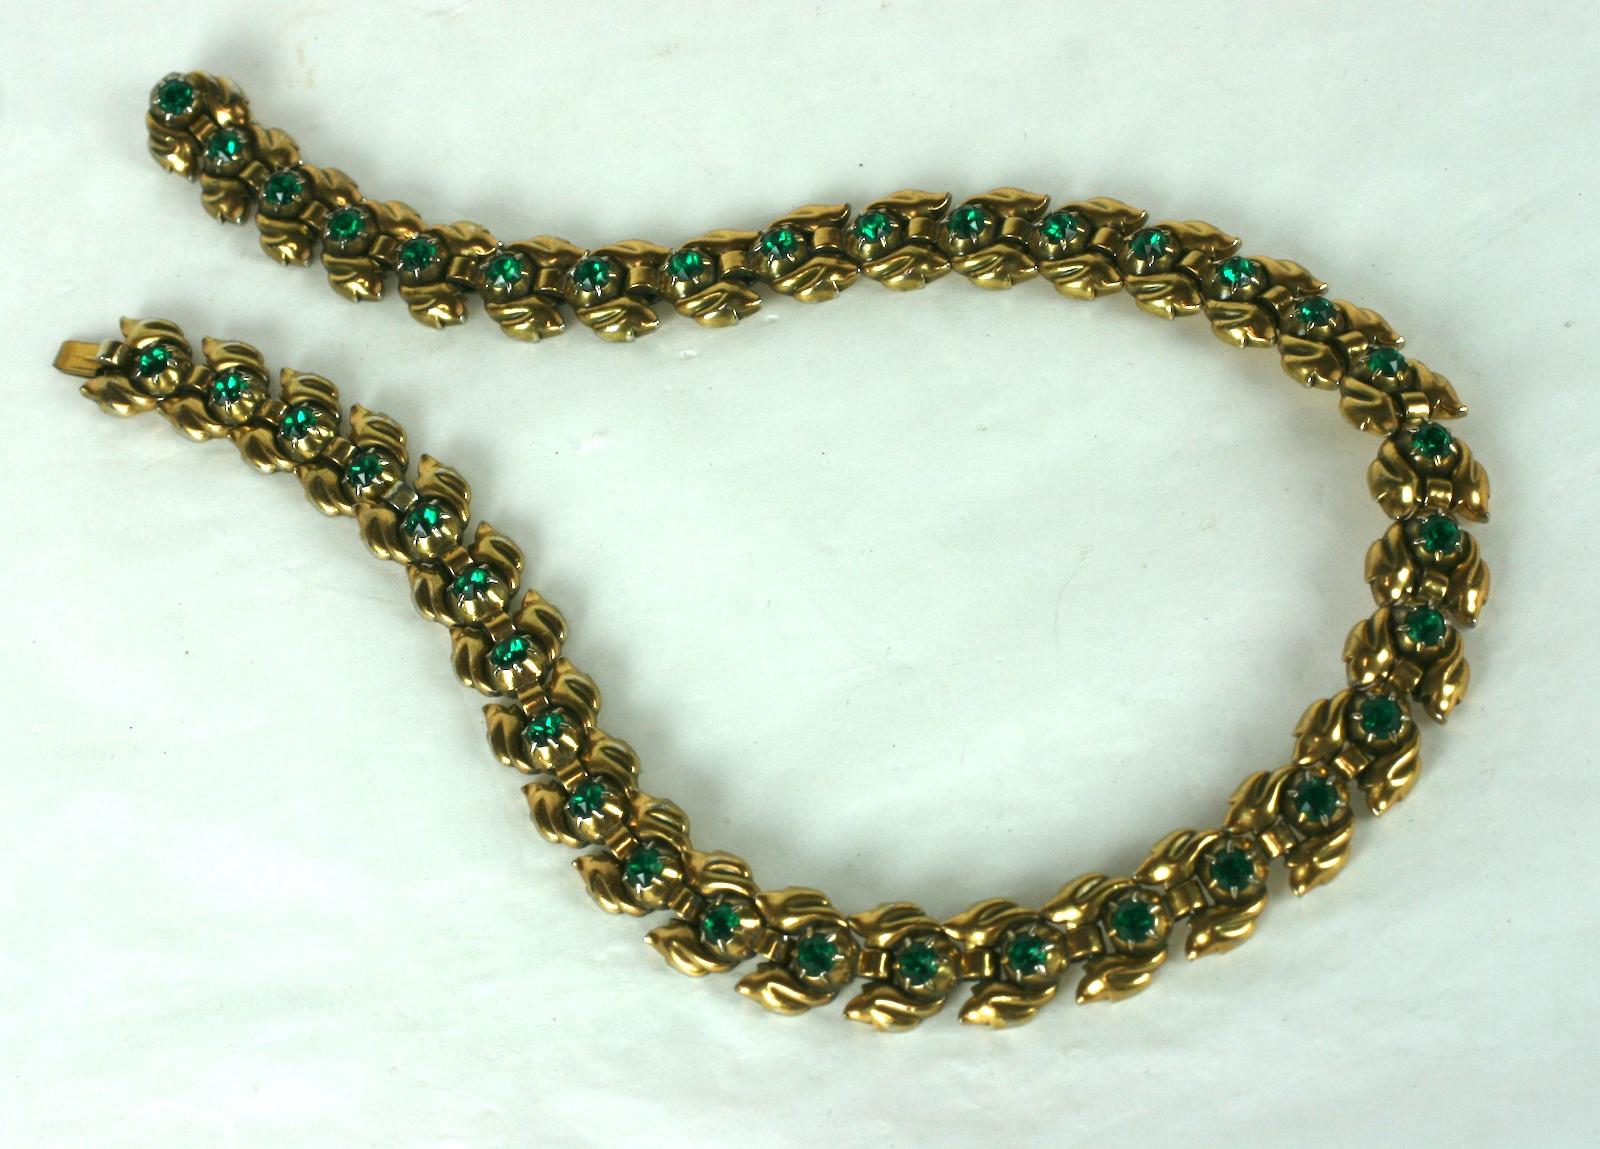 Trifari Eugenie Faux Smaragd Halskette in grüner Goldplatte aus den 1940er Jahren gesetzt. Jedes Glied ist mit einem Smaragdkristall besetzt, der sich in dieser geschmeidigen Gliederkette wiederholt.  1940er Jahre USA. 
16